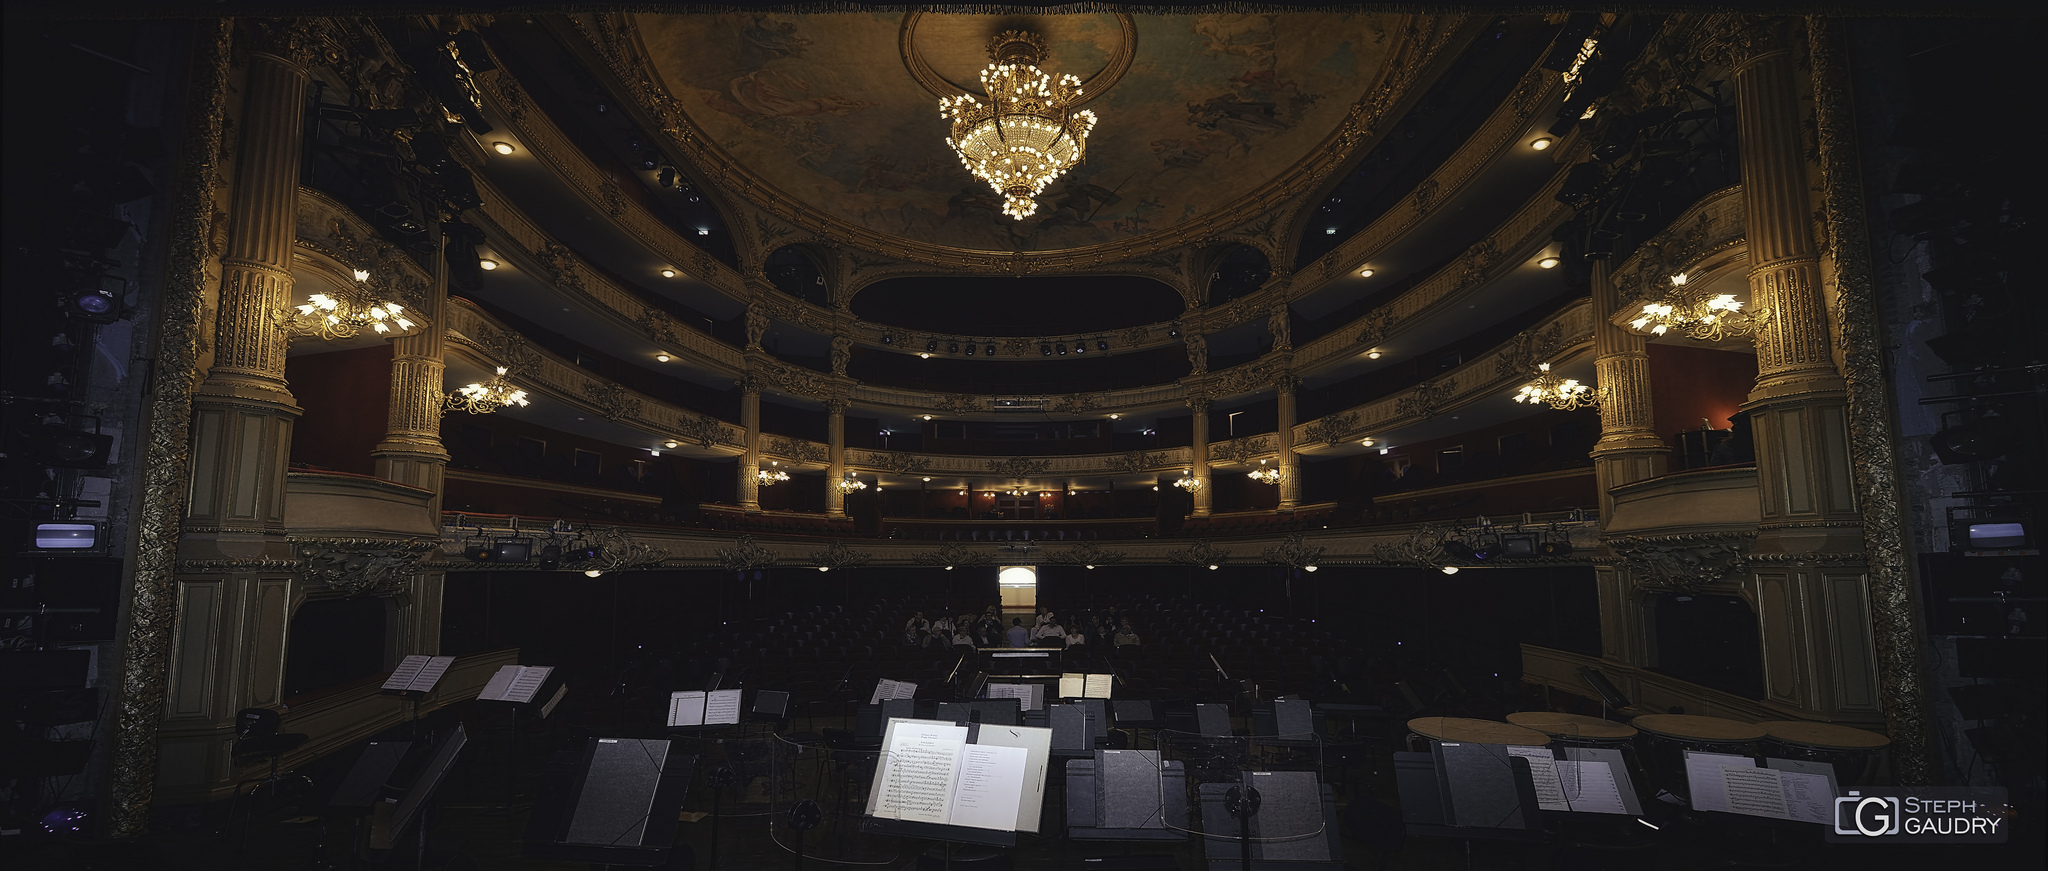 Opéra Royal de Wallonie-Liège - face au public [Click to start slideshow]